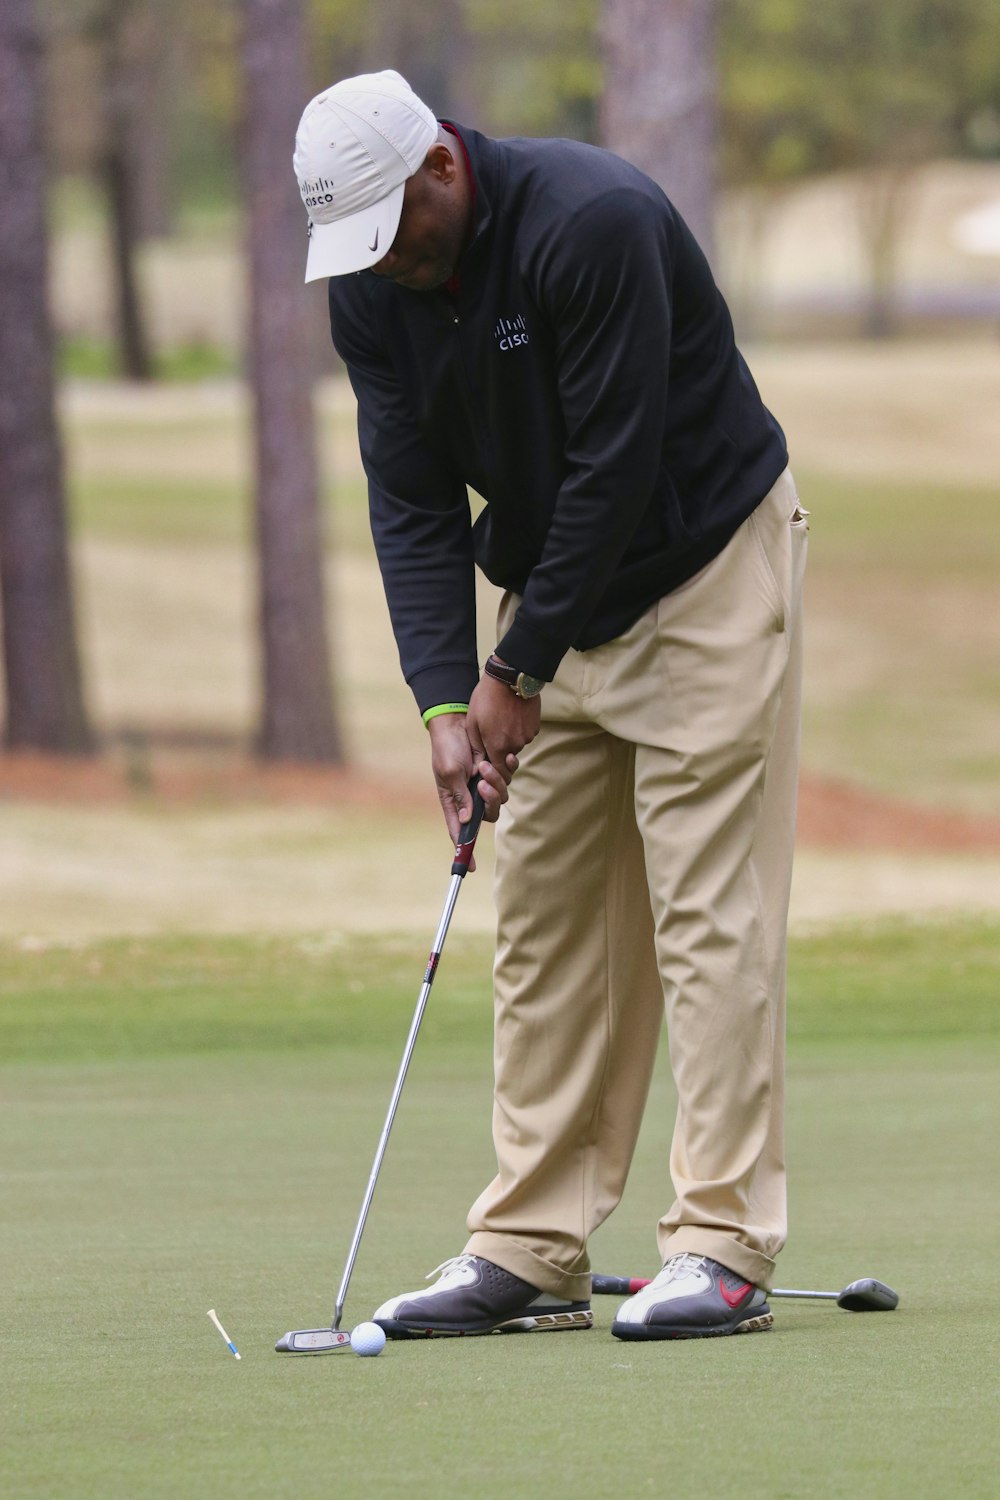 검은 재킷과 베이지색 바지를 입은 남자가 낮에 골프를 친다